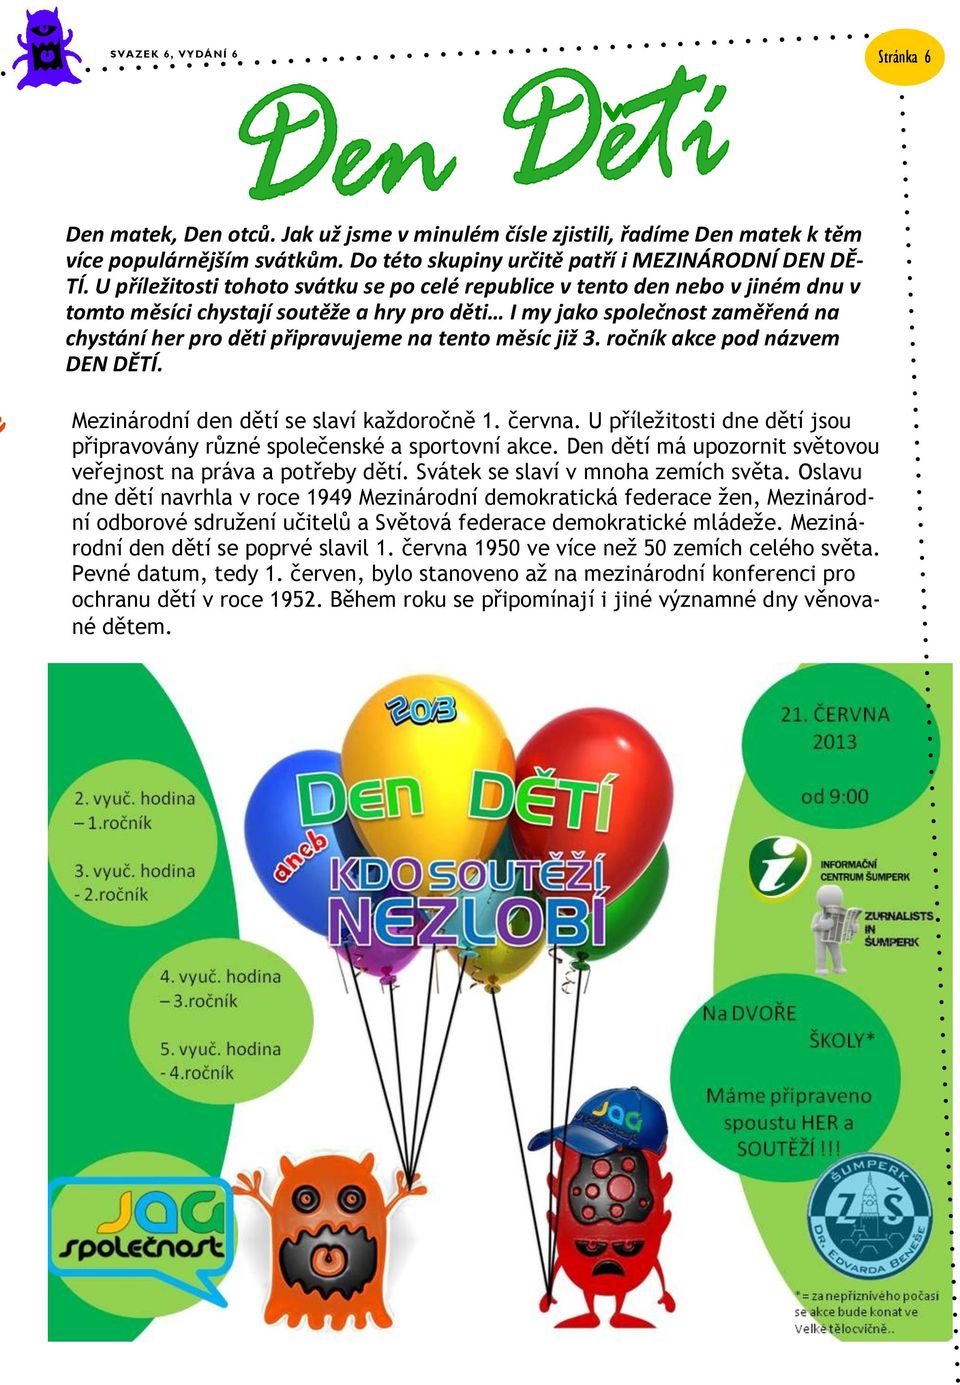 tento měsíc již 3. ročník akce pod názvem DEN DĚTÍ. Mezinárodní den dětí se slaví každoročně 1. června. U příležitosti dne dětí jsou připravovány různé společenské a sportovní akce.